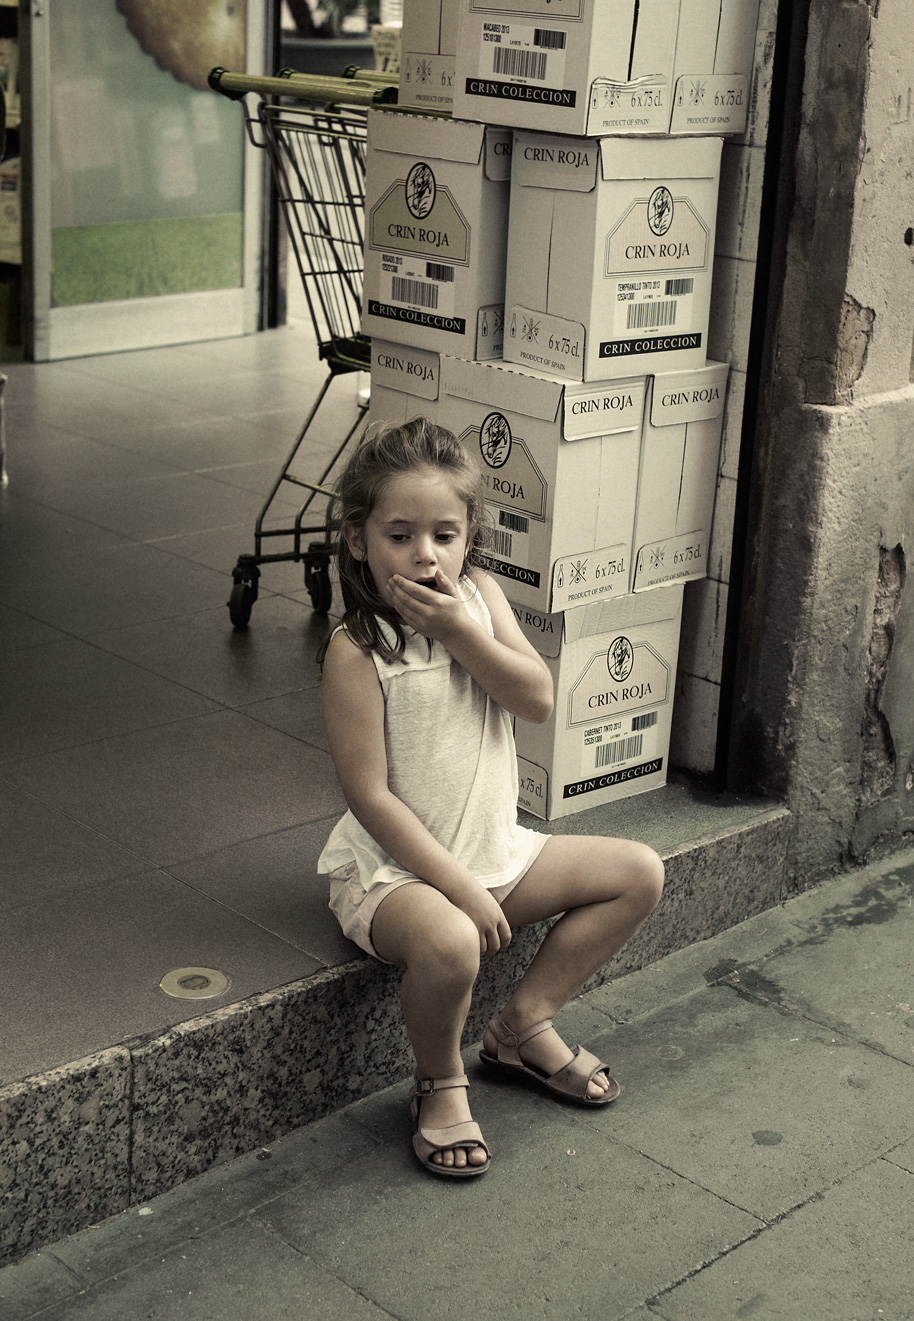 Histoire (s): Little Girl, wine boxes. Barcelona,2014.